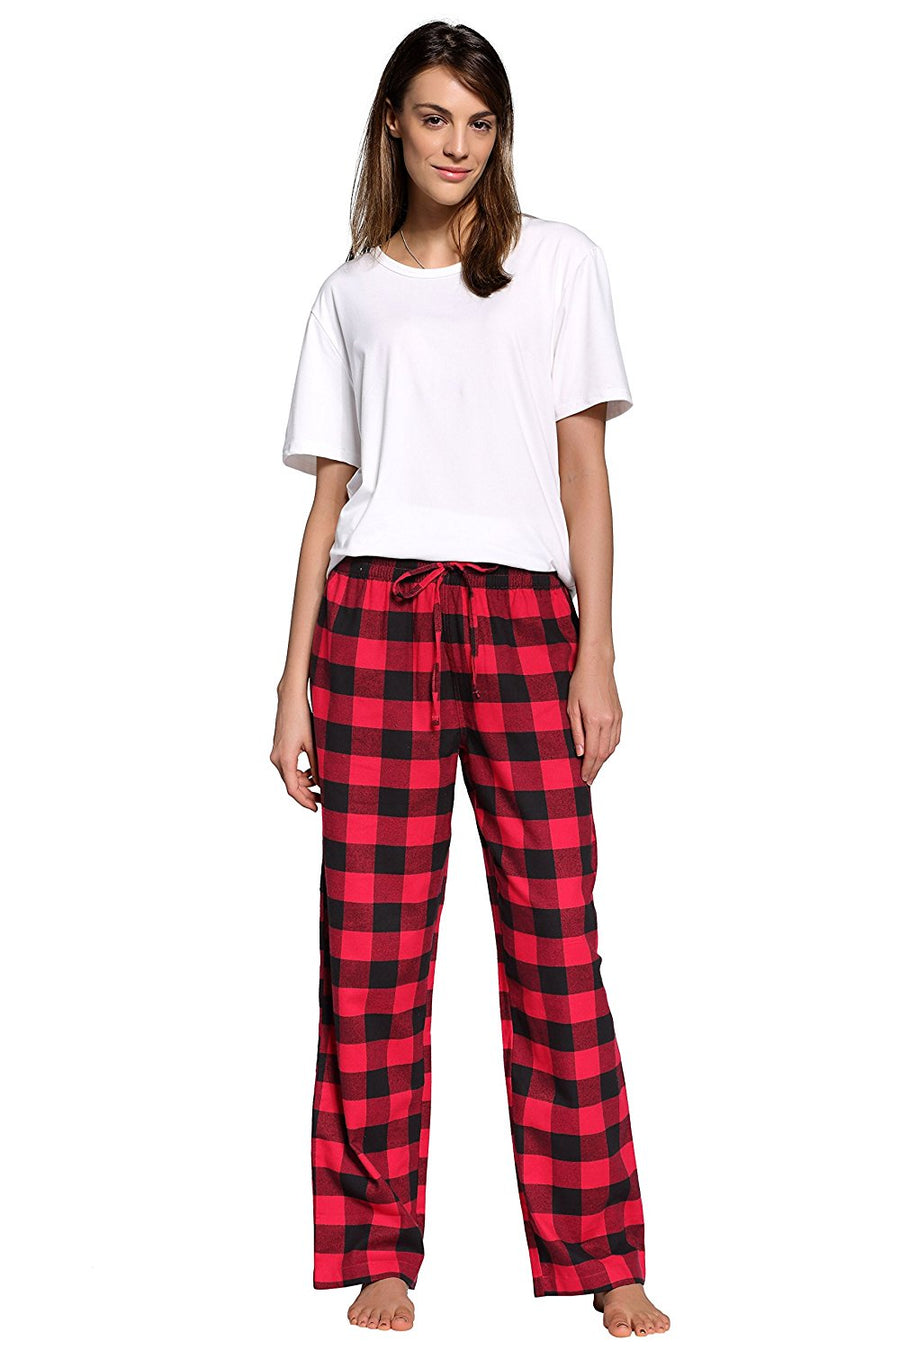 BLUEMING Women Plaid Pajama Pants Sleepwear